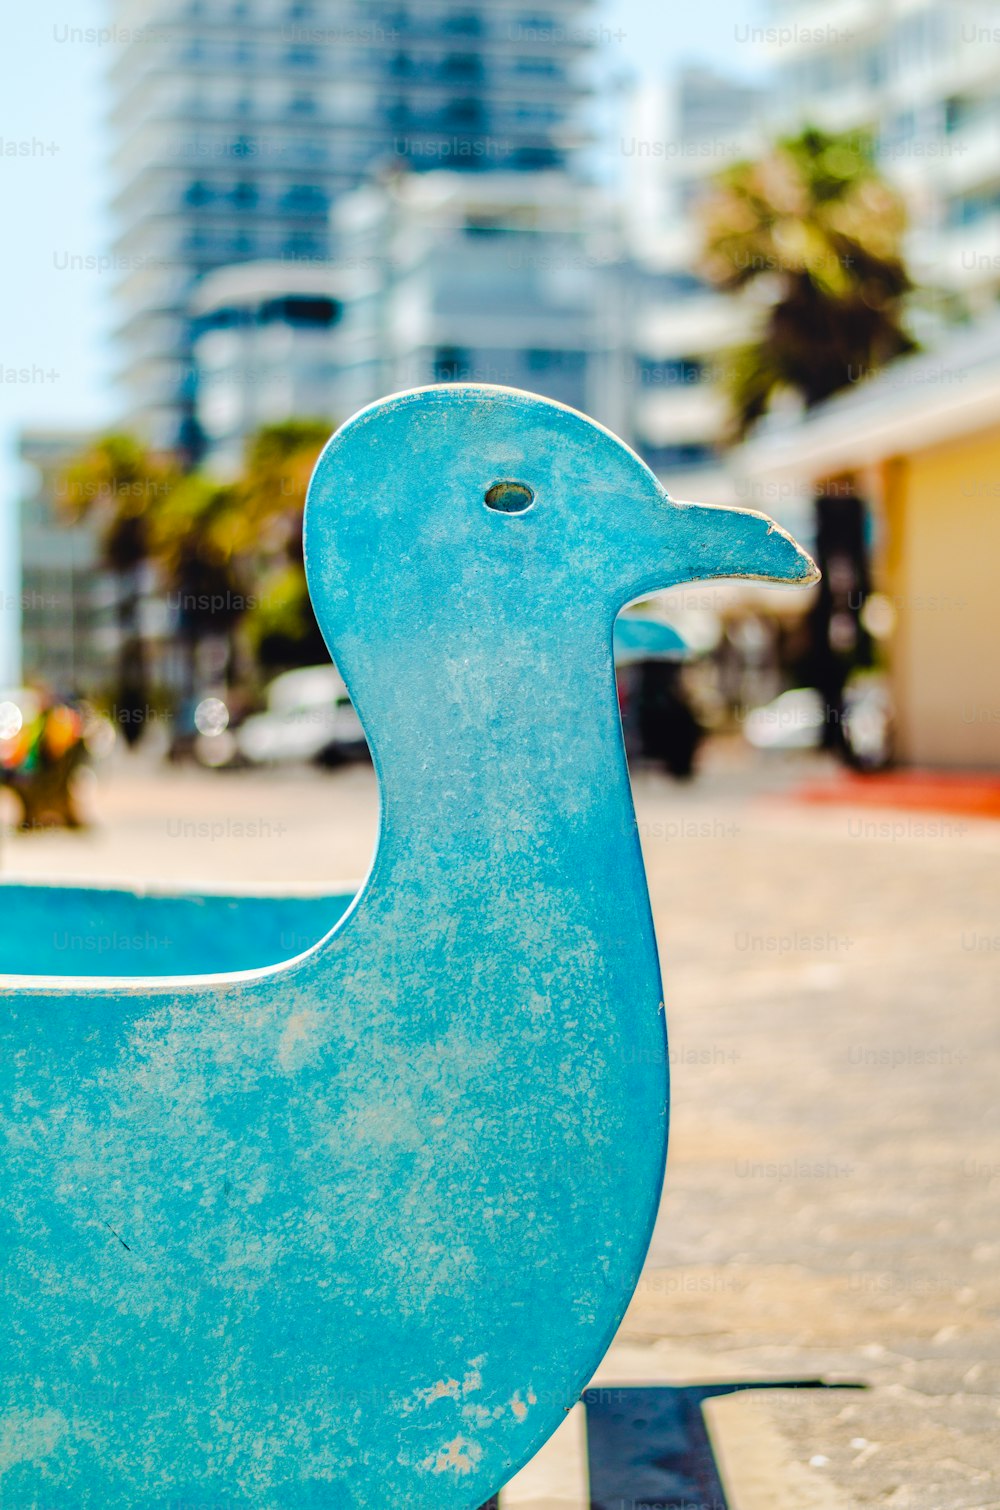 Eine Statue einer blauen Ente auf einem Bürgersteig